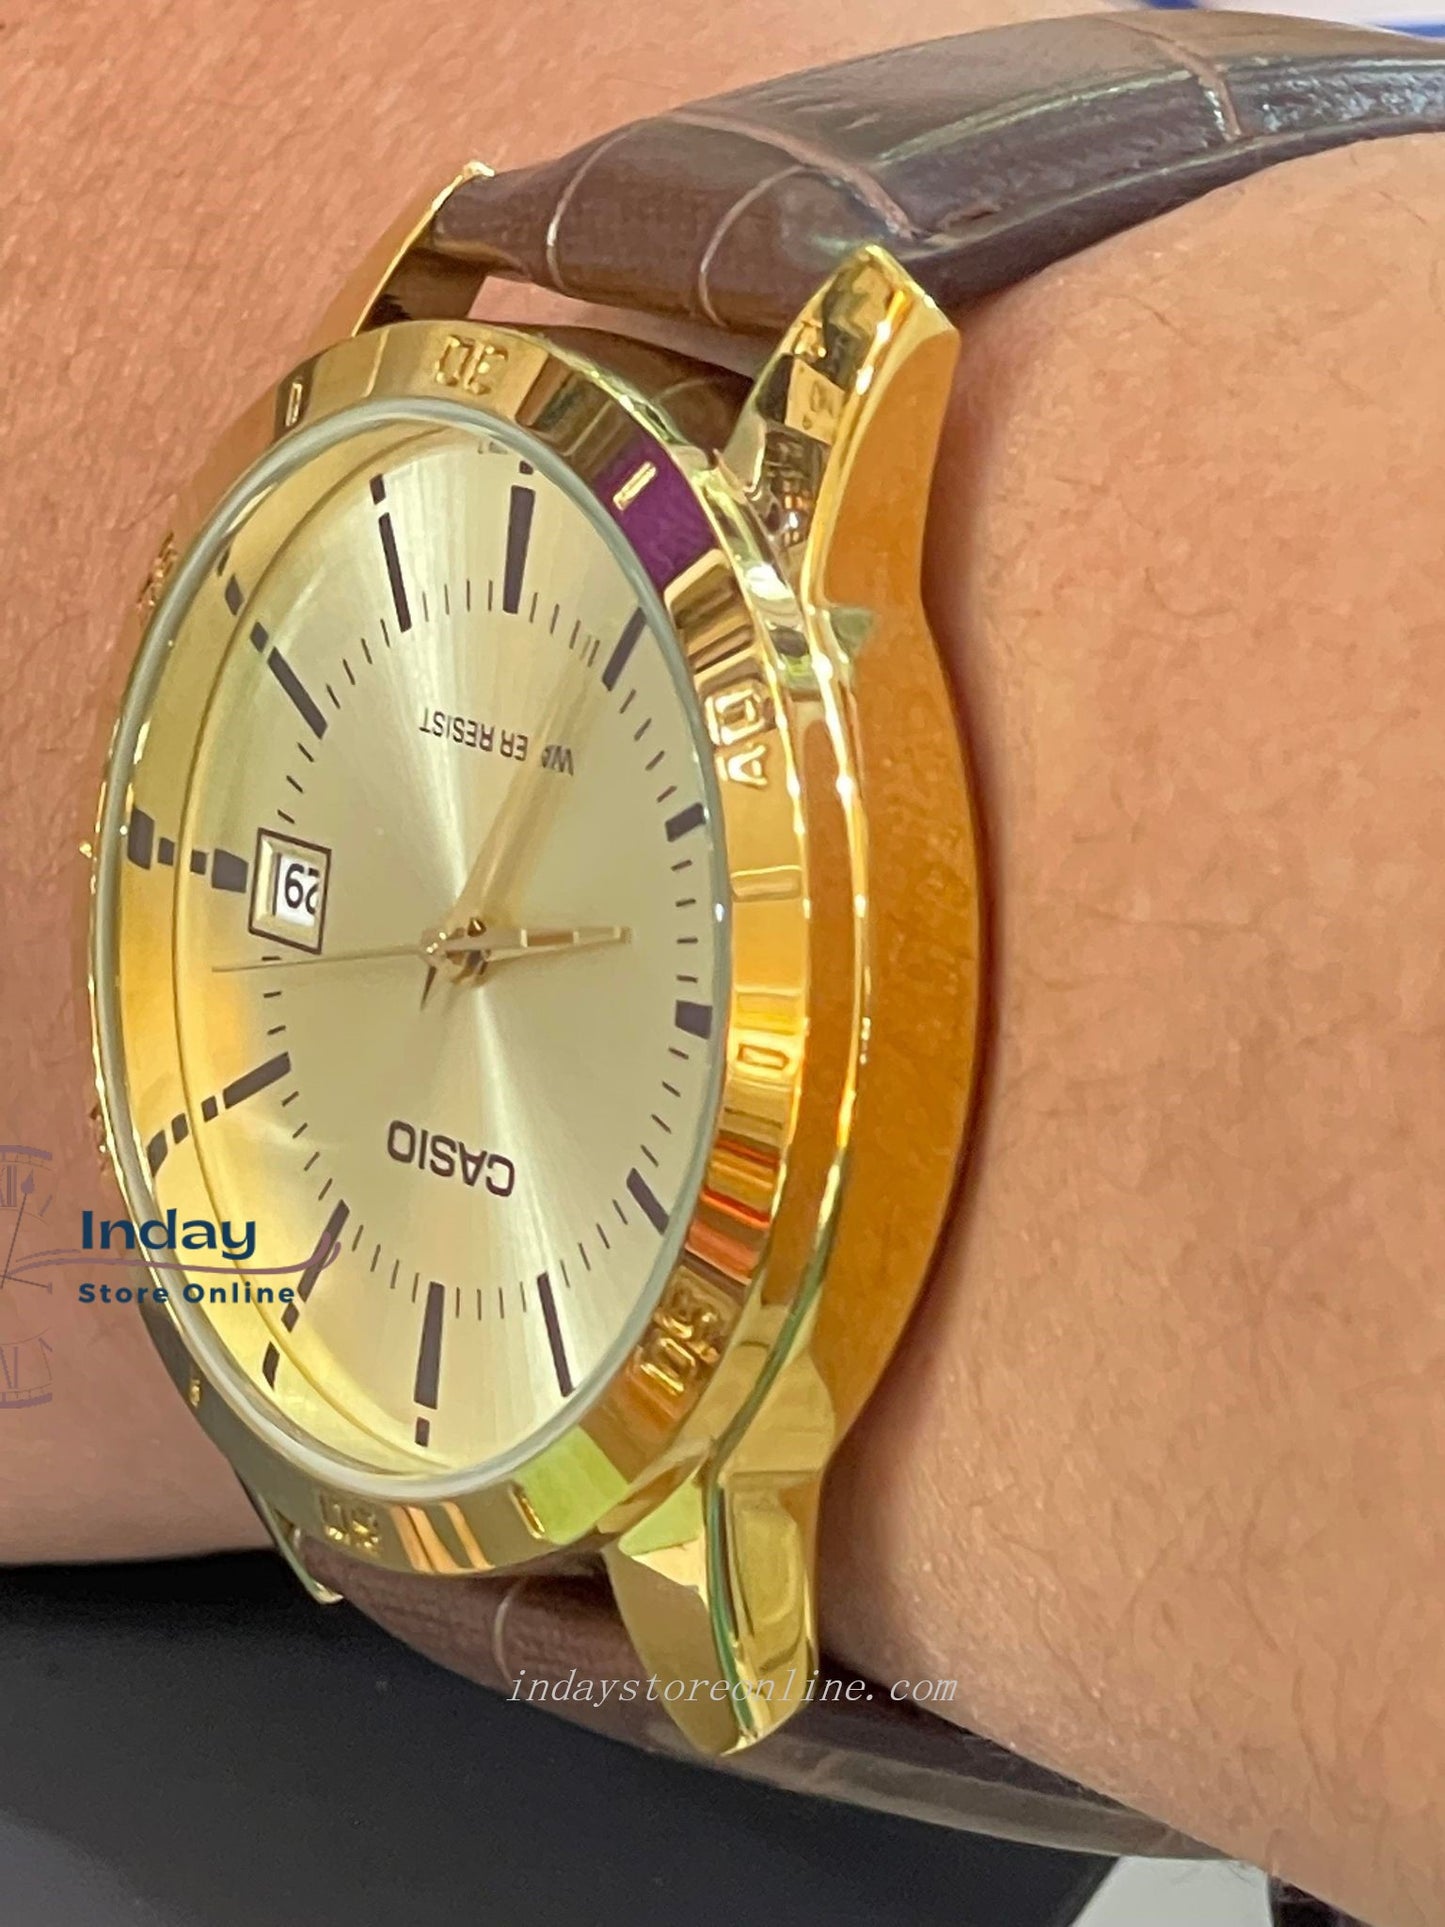 Casio Standard Men's Watch MTP-V004GL-9A